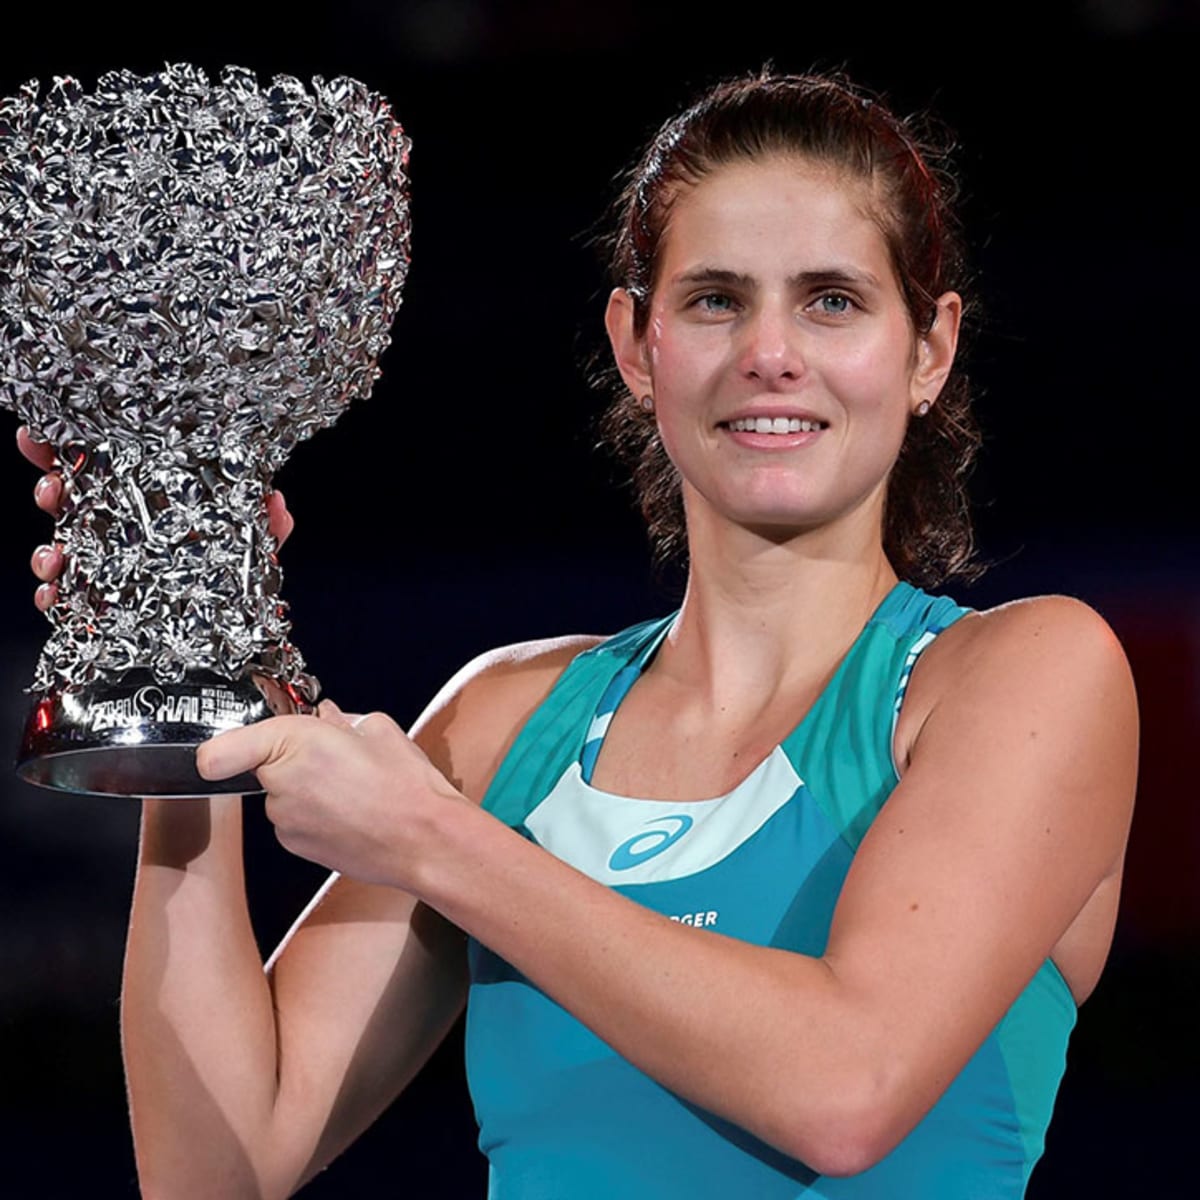 WTA Elite Trophy: Julia Goerges tops Vandeweghe Sports Illustrated